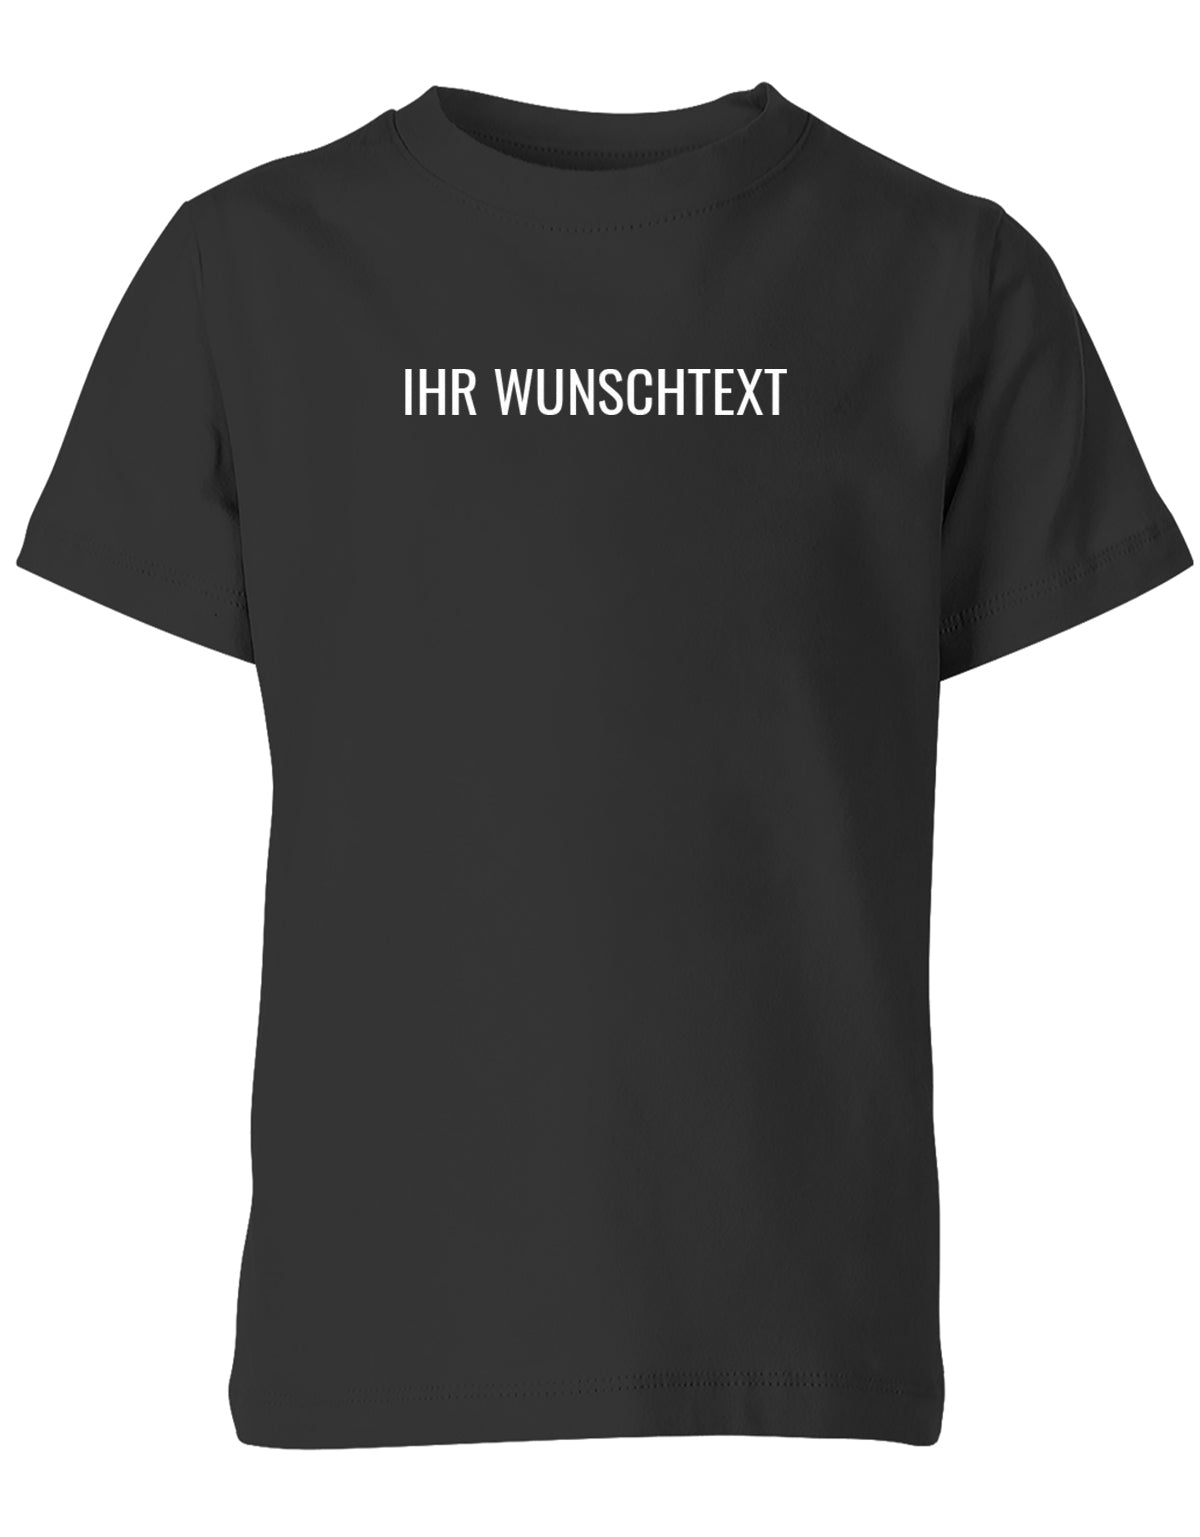 Kinder Tshirt mit Wunschtext.  Minimalistisches Design. Schwarz